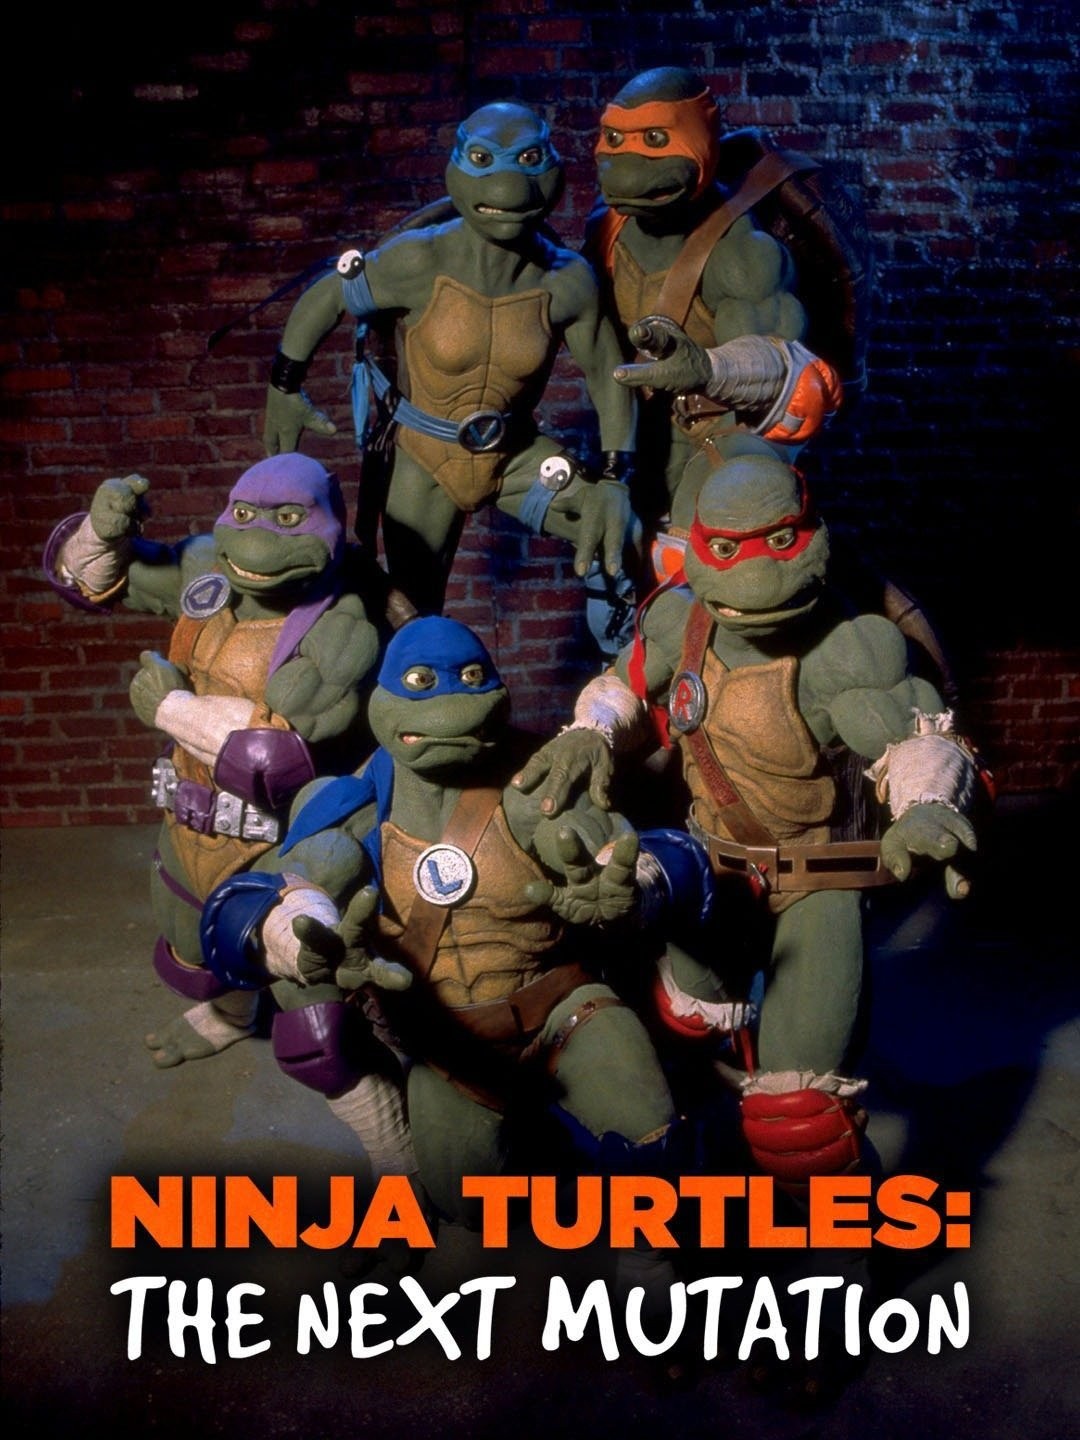 Ninja Turtles: Venus de Milo's History Explained — First Female